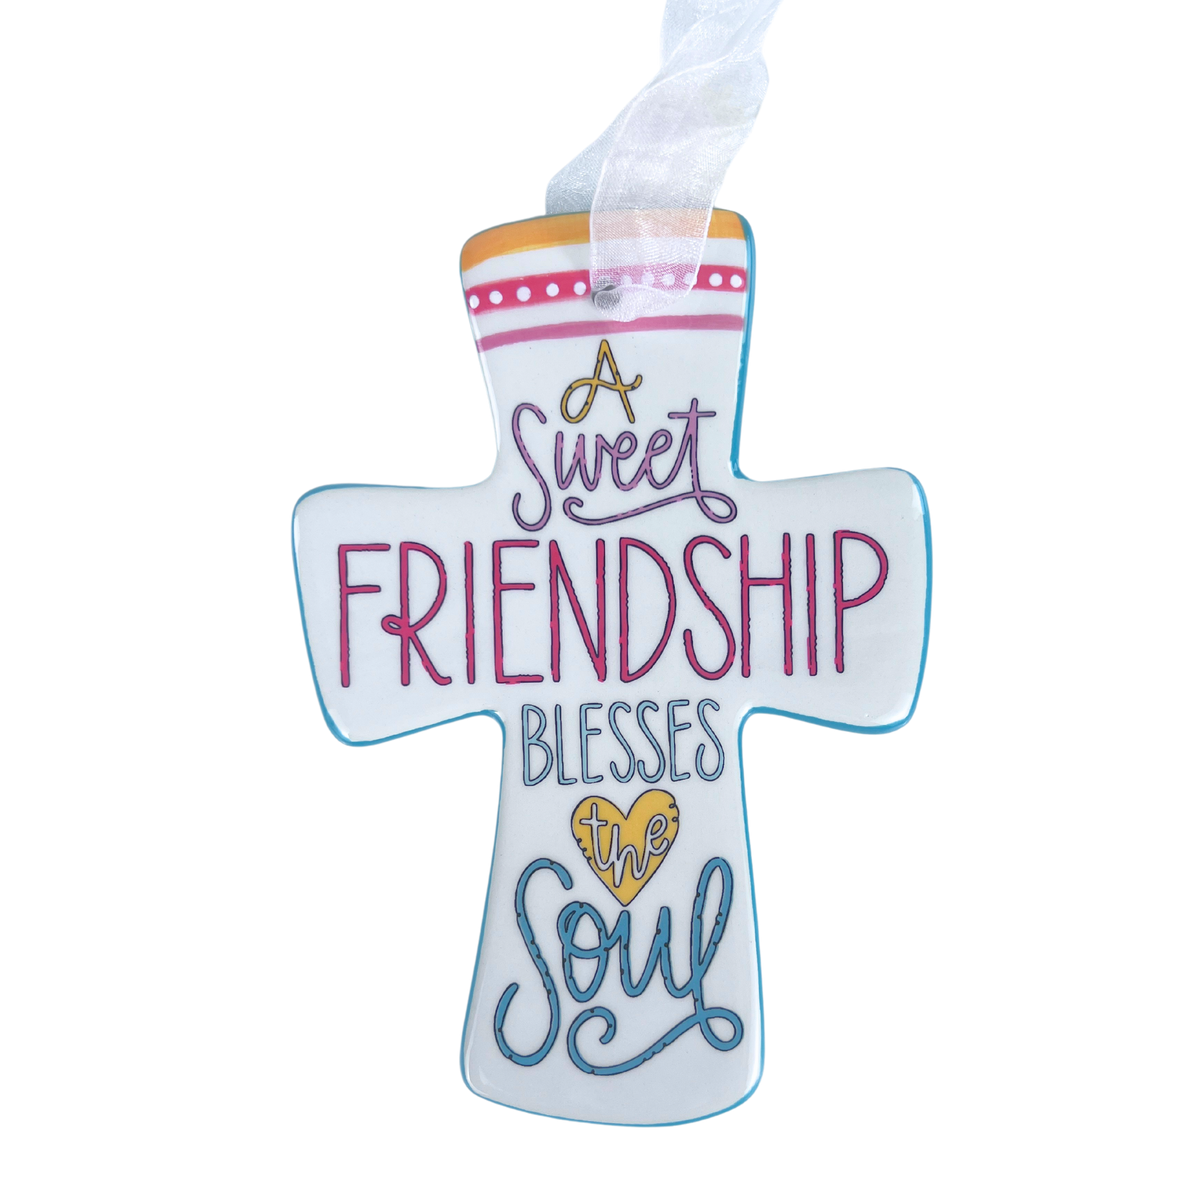 Friendship Blesses the Soul Cross